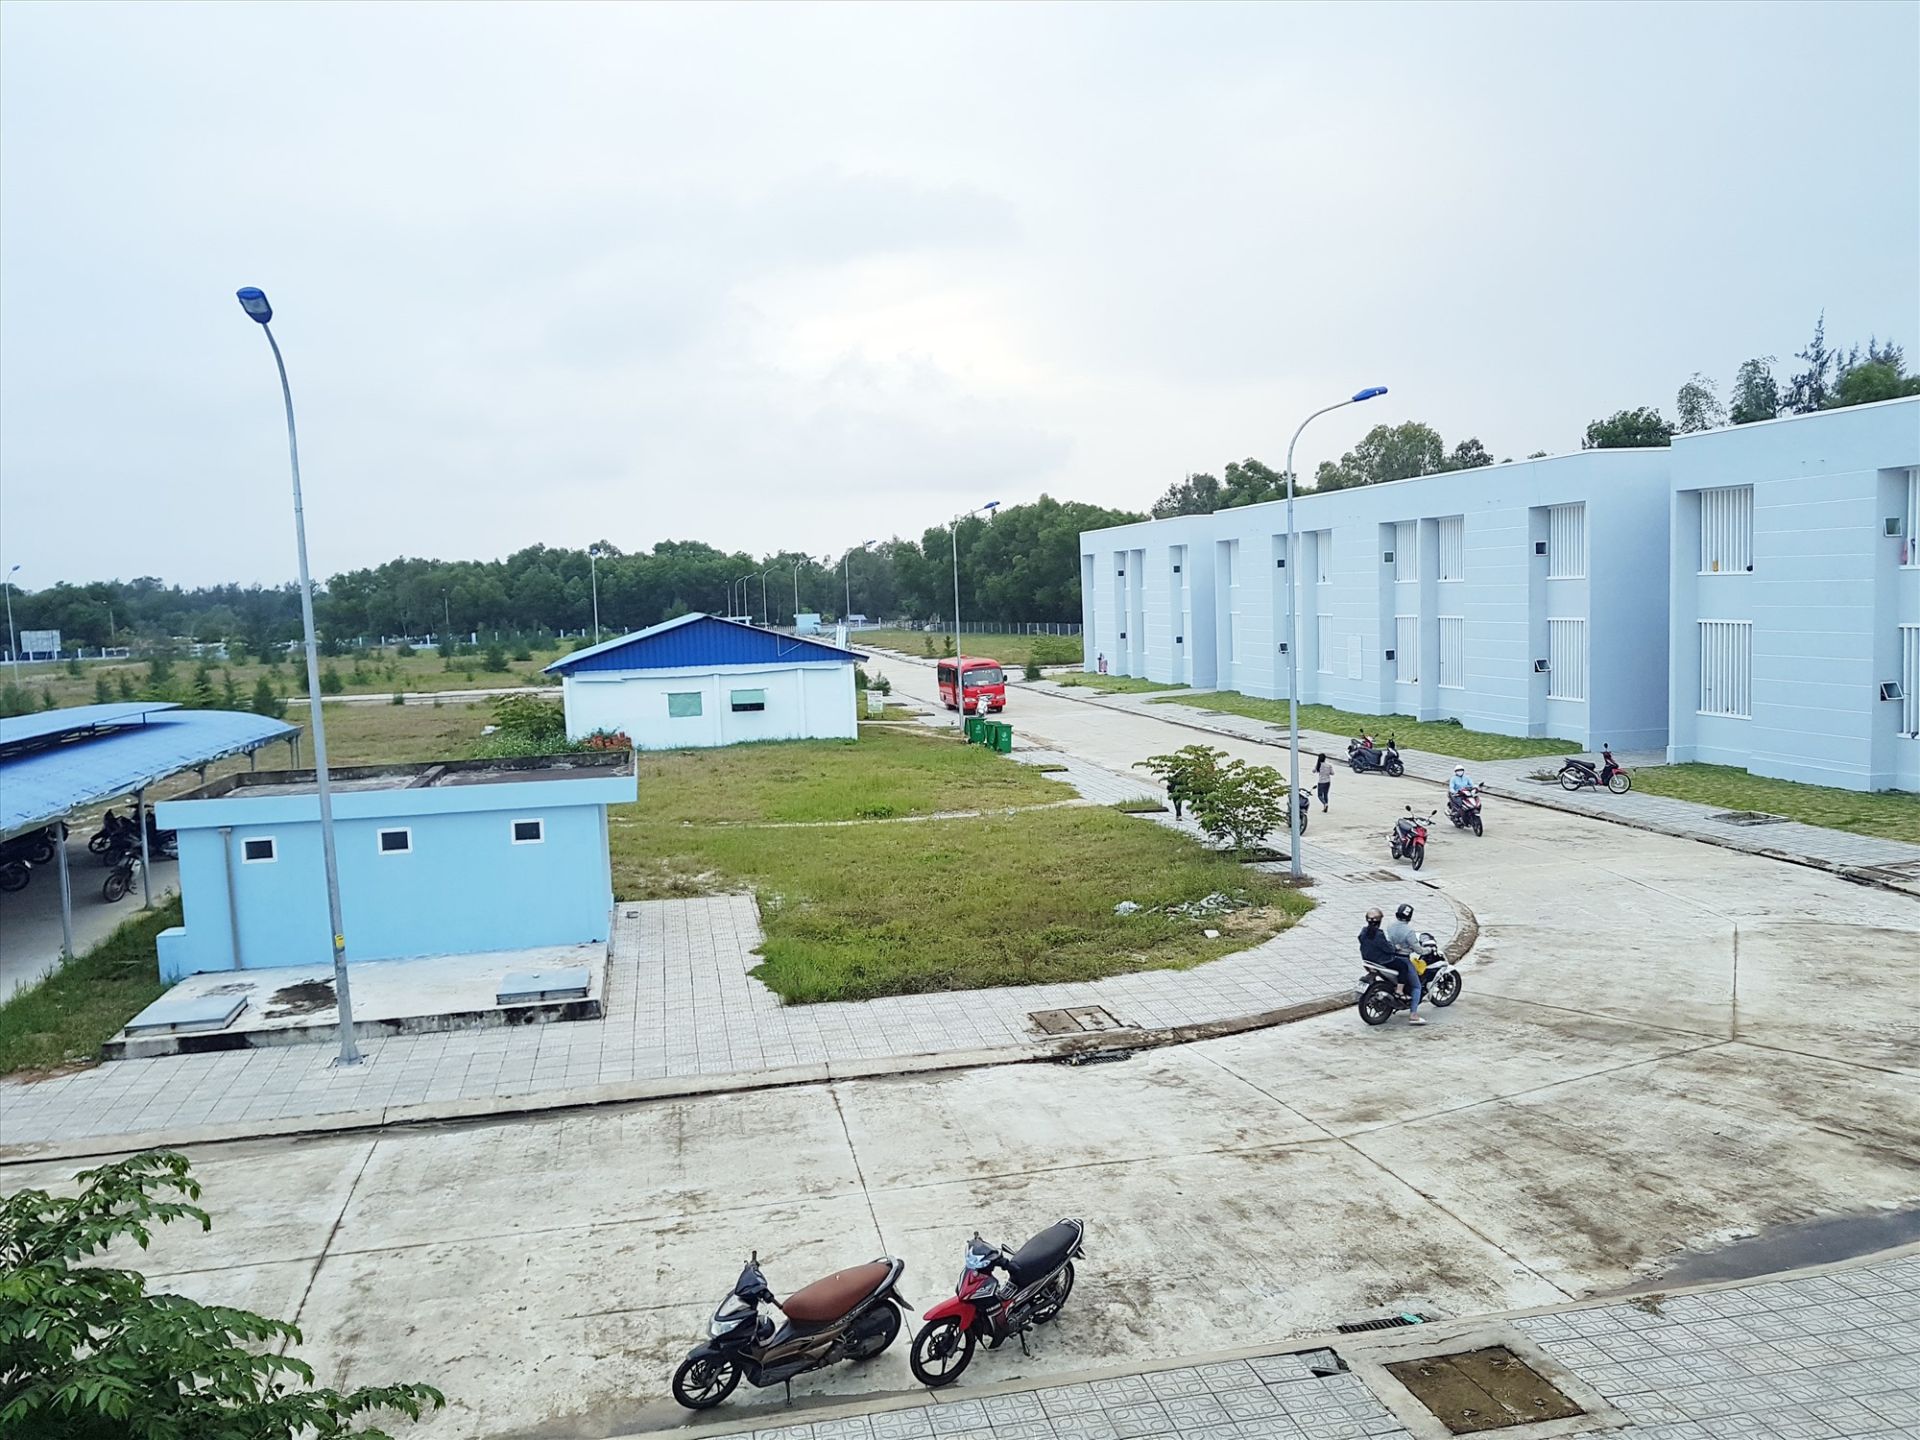 Khu nhà ở công nhân của Công ty TNHH MTV Panko tại thành phố Tam Kỳ, diện tích khoảng 5,1 ha, đã hoàn thành giai đoạn 1 và đưa vào sử dụng từ năm 2017 với 200 căn phục vụ nhu cầu cầu ở chỗ ở cho khoảng 2.000 công nhân tại khu công nghiệp Tam Thăng.